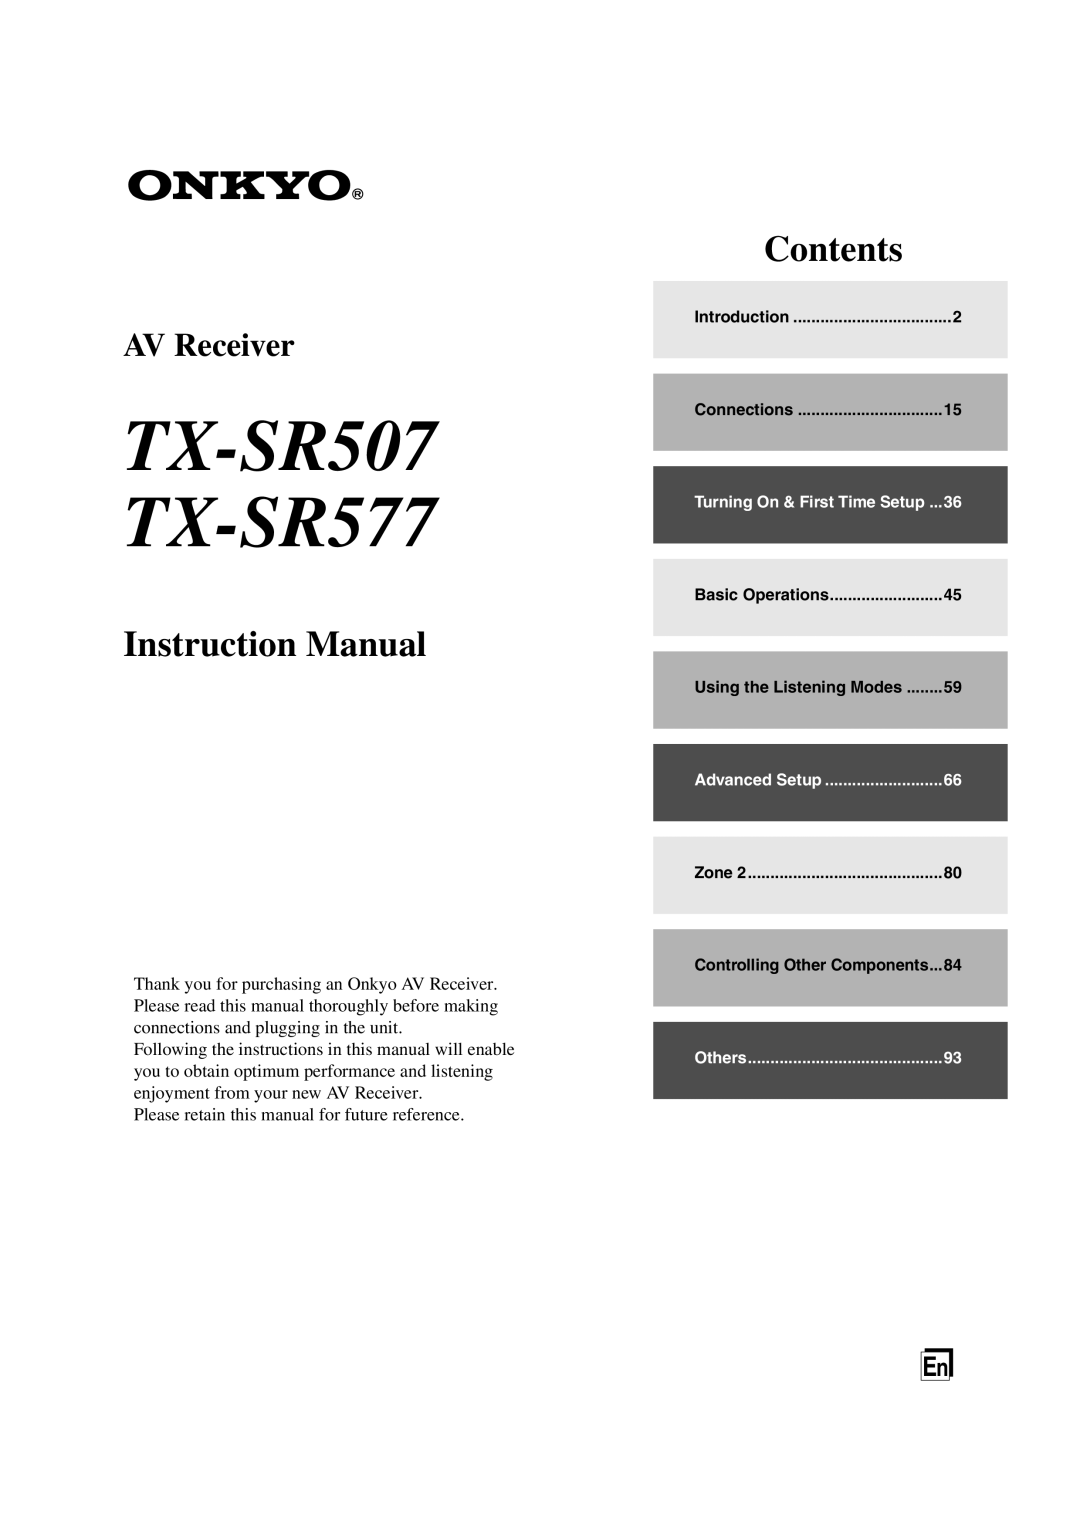 Onkyo instruction manual TX-SR507 TX-SR577, Instruction Manual, Contents, AV Receiver 